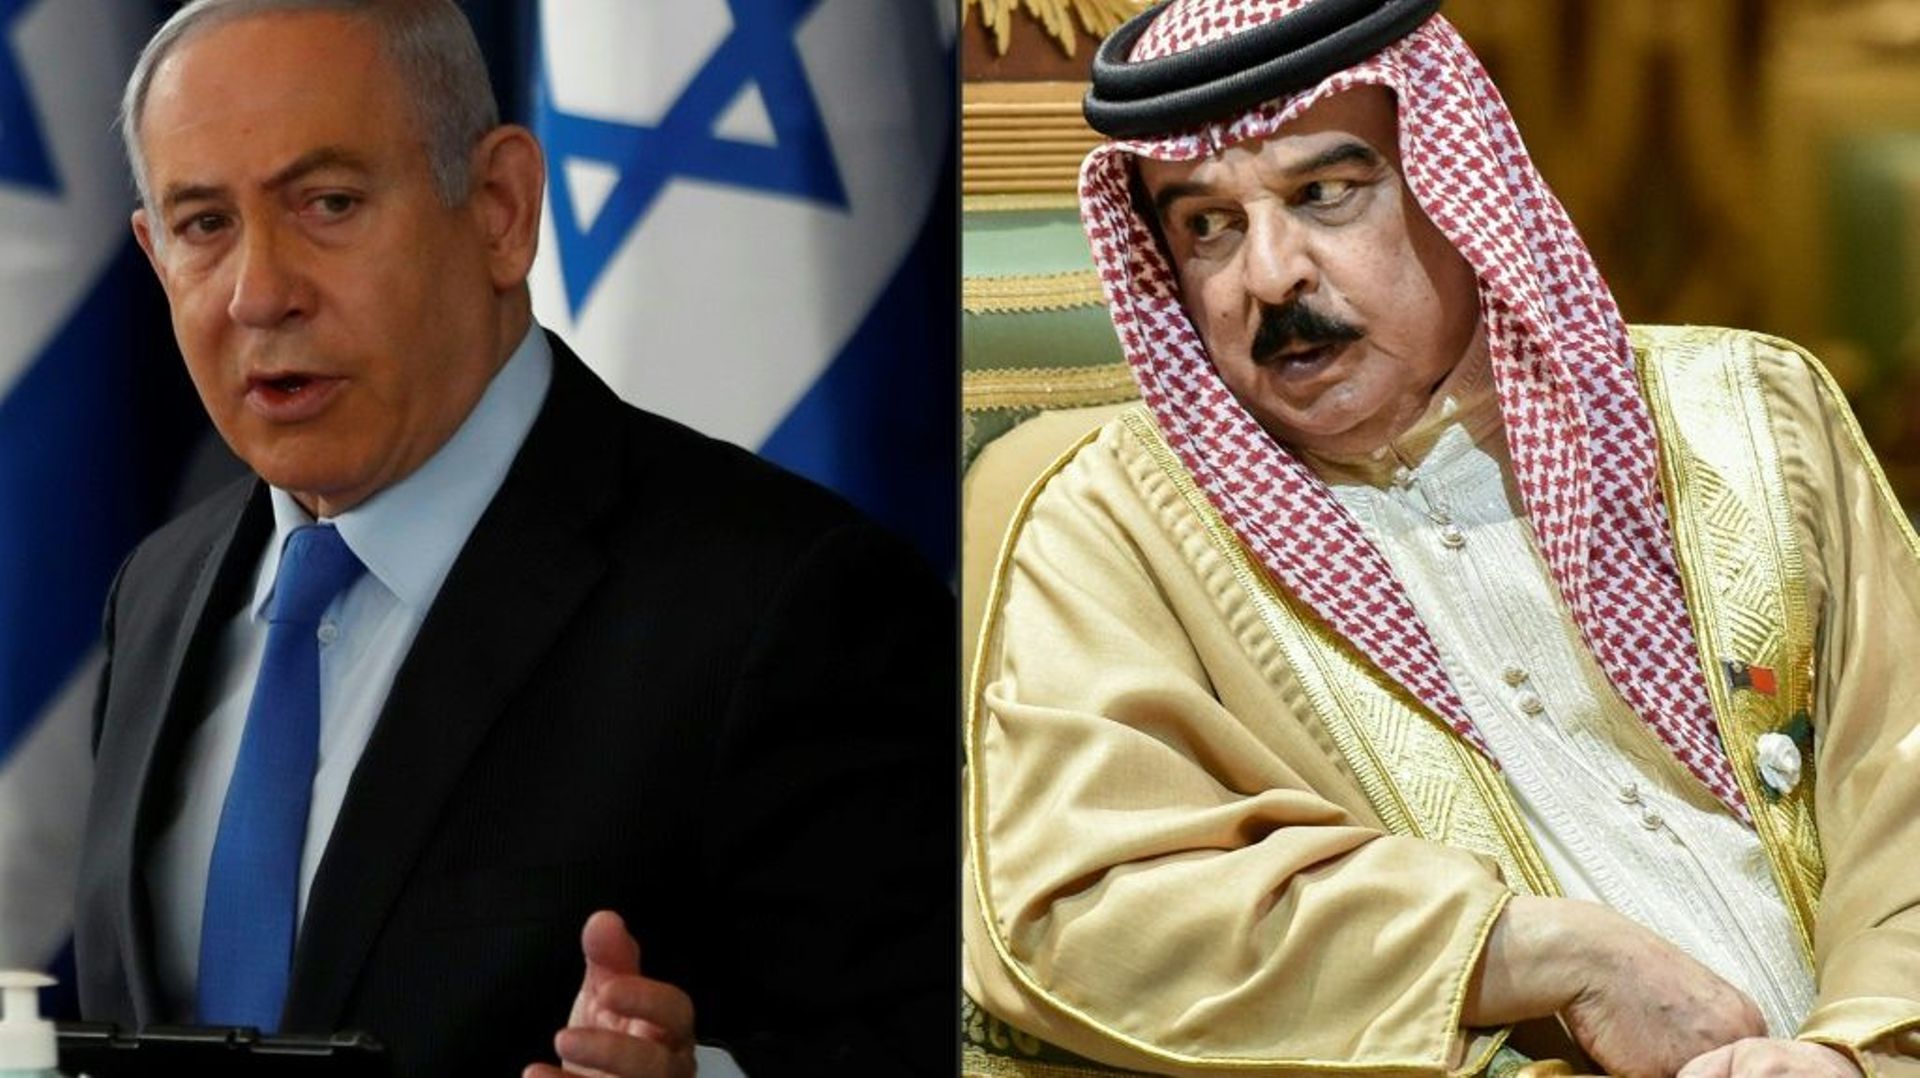 (COMBO) A gauche, le Premier ministre israélien Benjamin Netanyahu à Jésuralem, le roi du Bahreïn Hamad bin Isa Al Khalifa à Riyad en Arabie saoudite, le 10 décembre 2019  